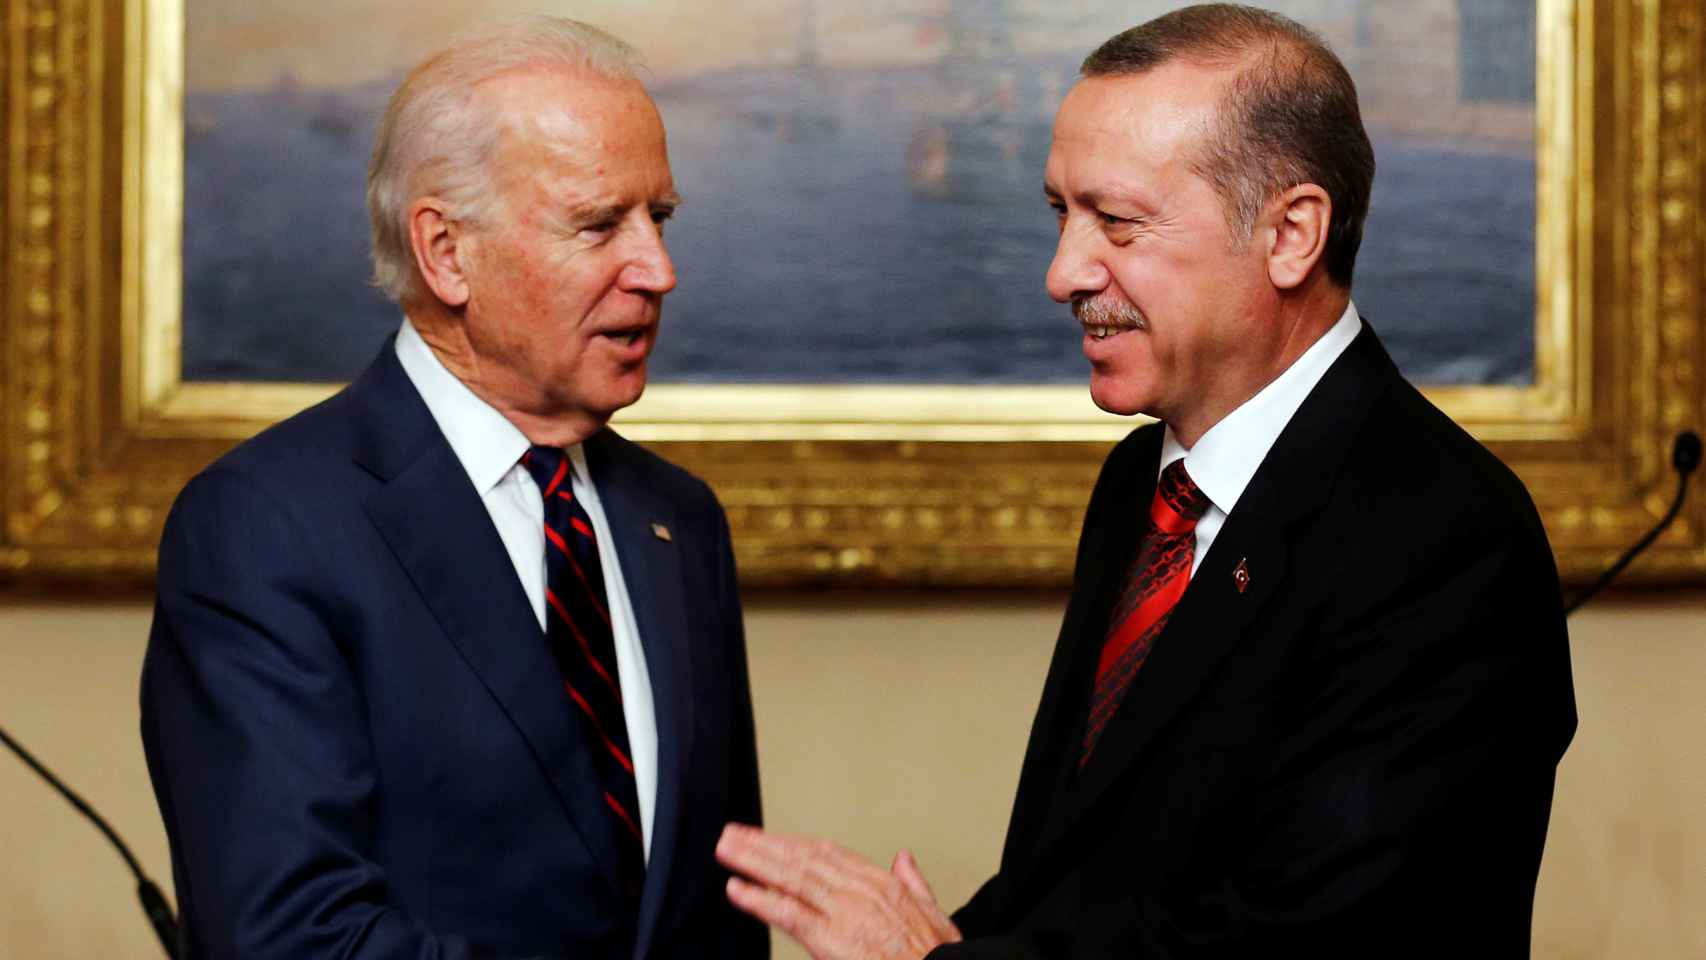 Erdogan y Biden en una imagen de 2014 en Estambul.